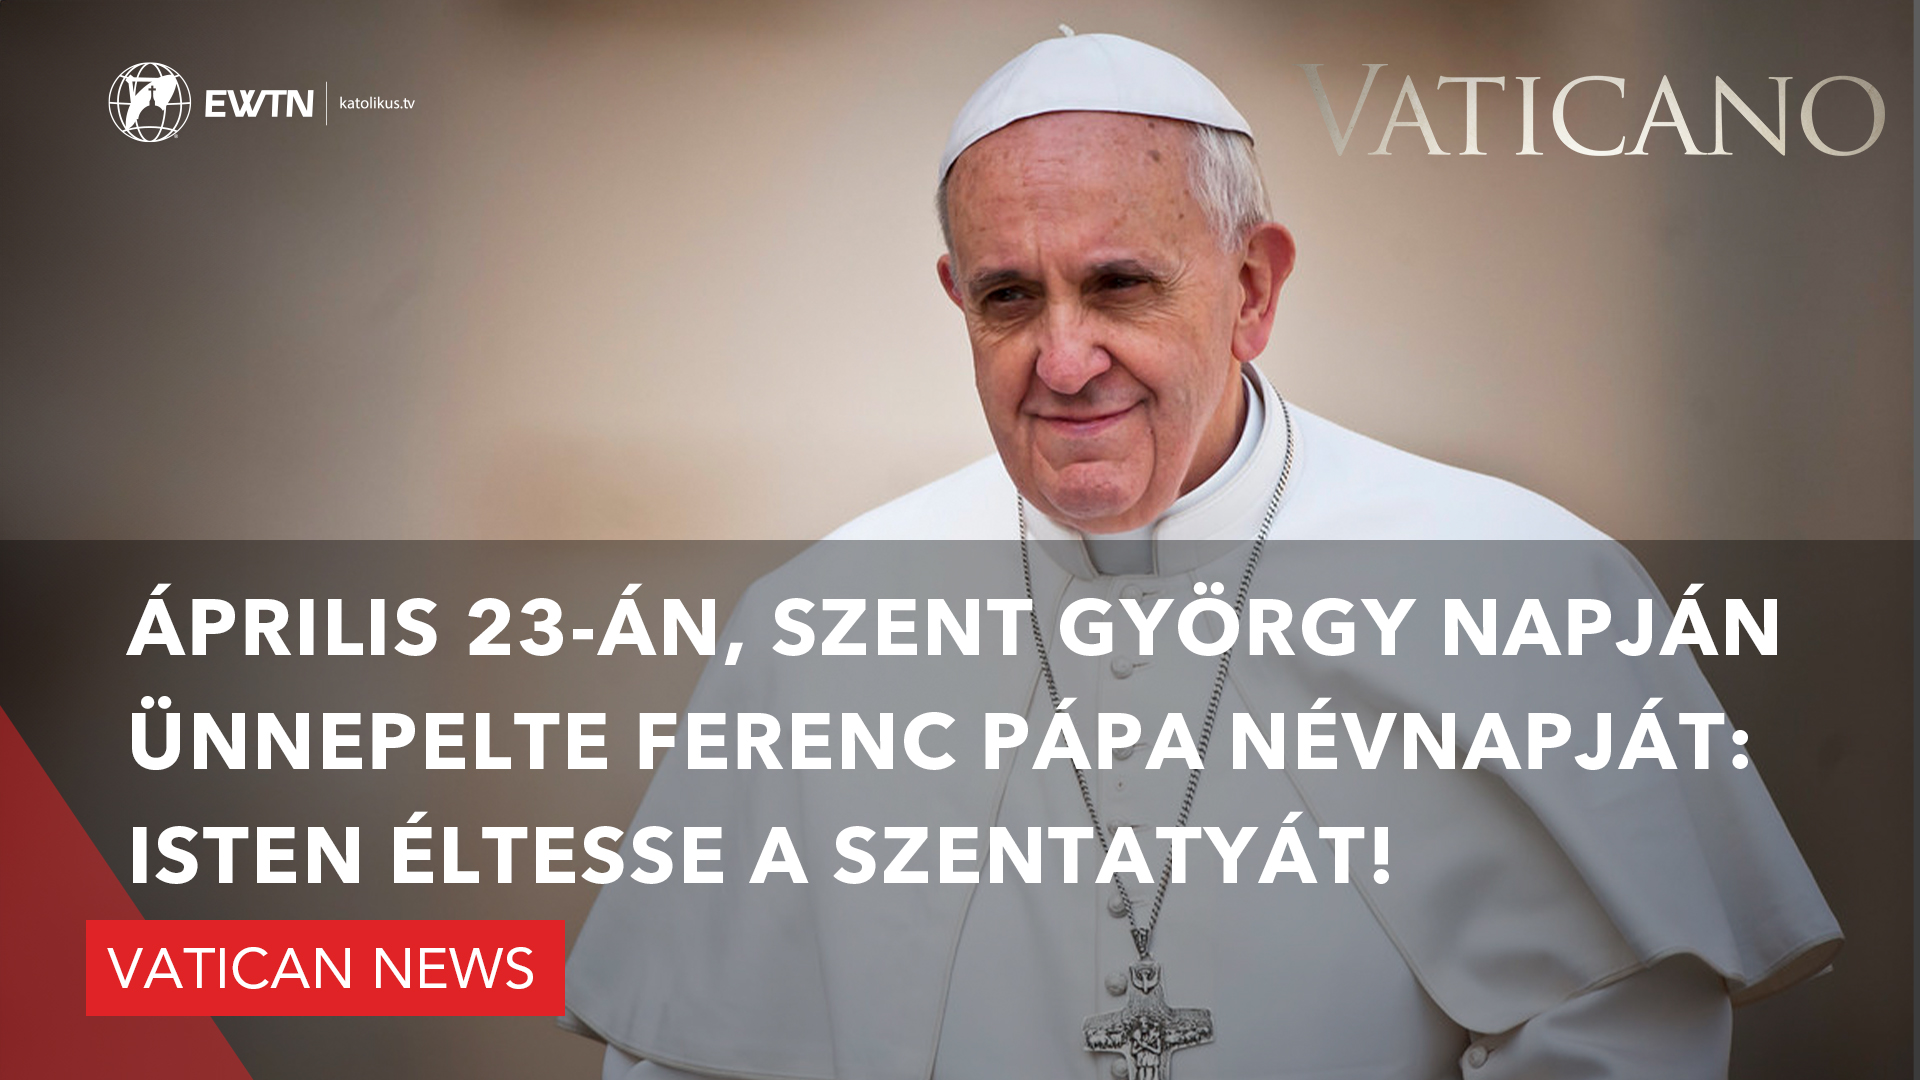 Vatican News: Április 23-án, Szent György napján ünnepelte Ferenc pápa névnapját: Isten éltesse a Szentatyát!